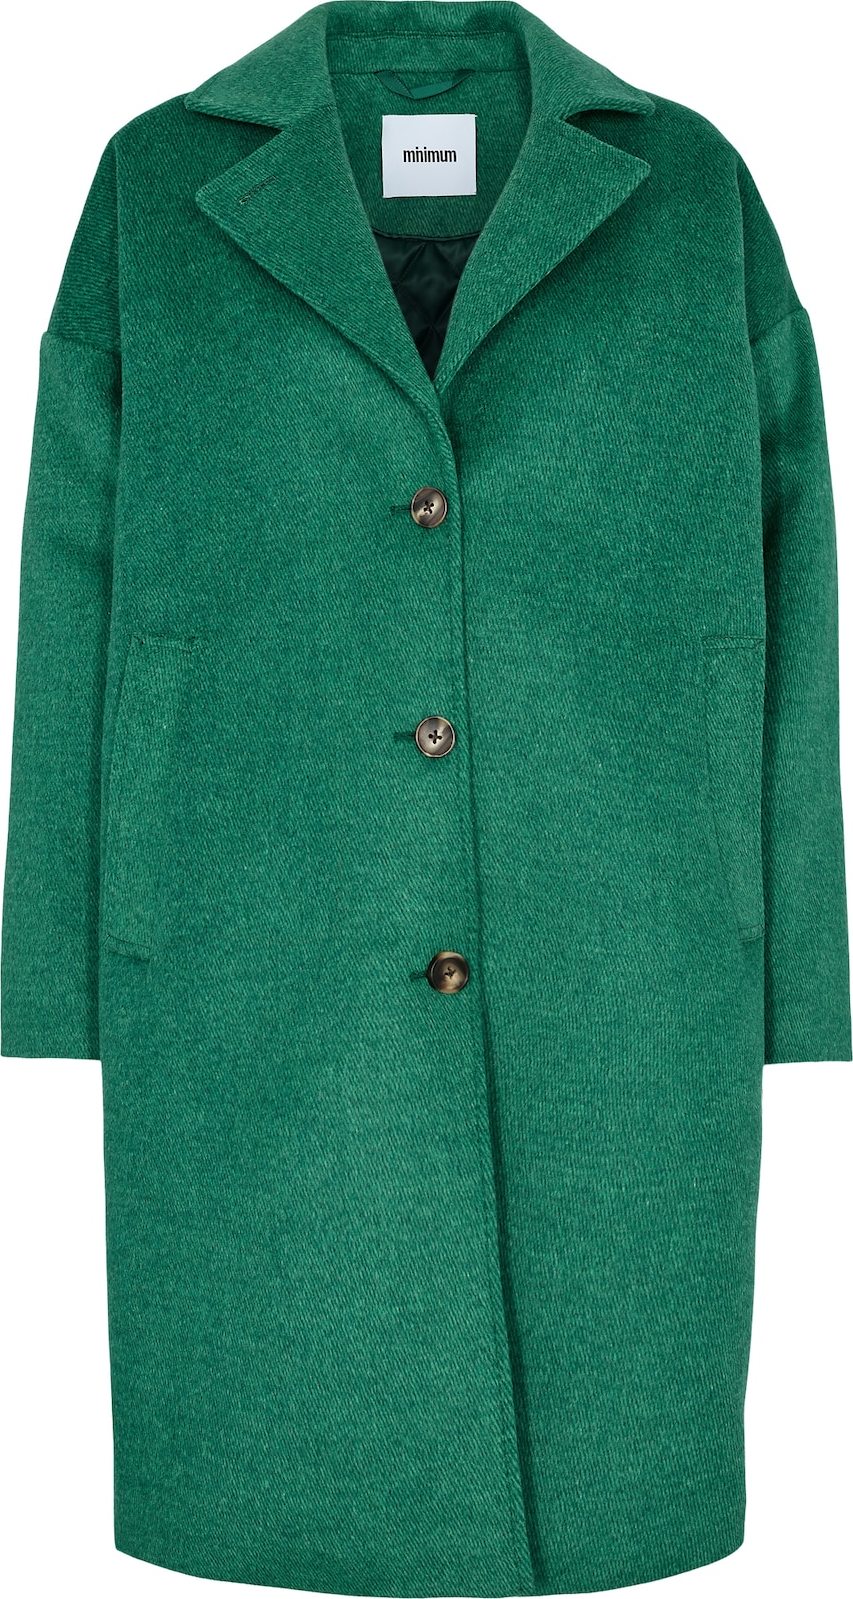 minimum Přechodný kabát 'Gutha' zelená / mátová